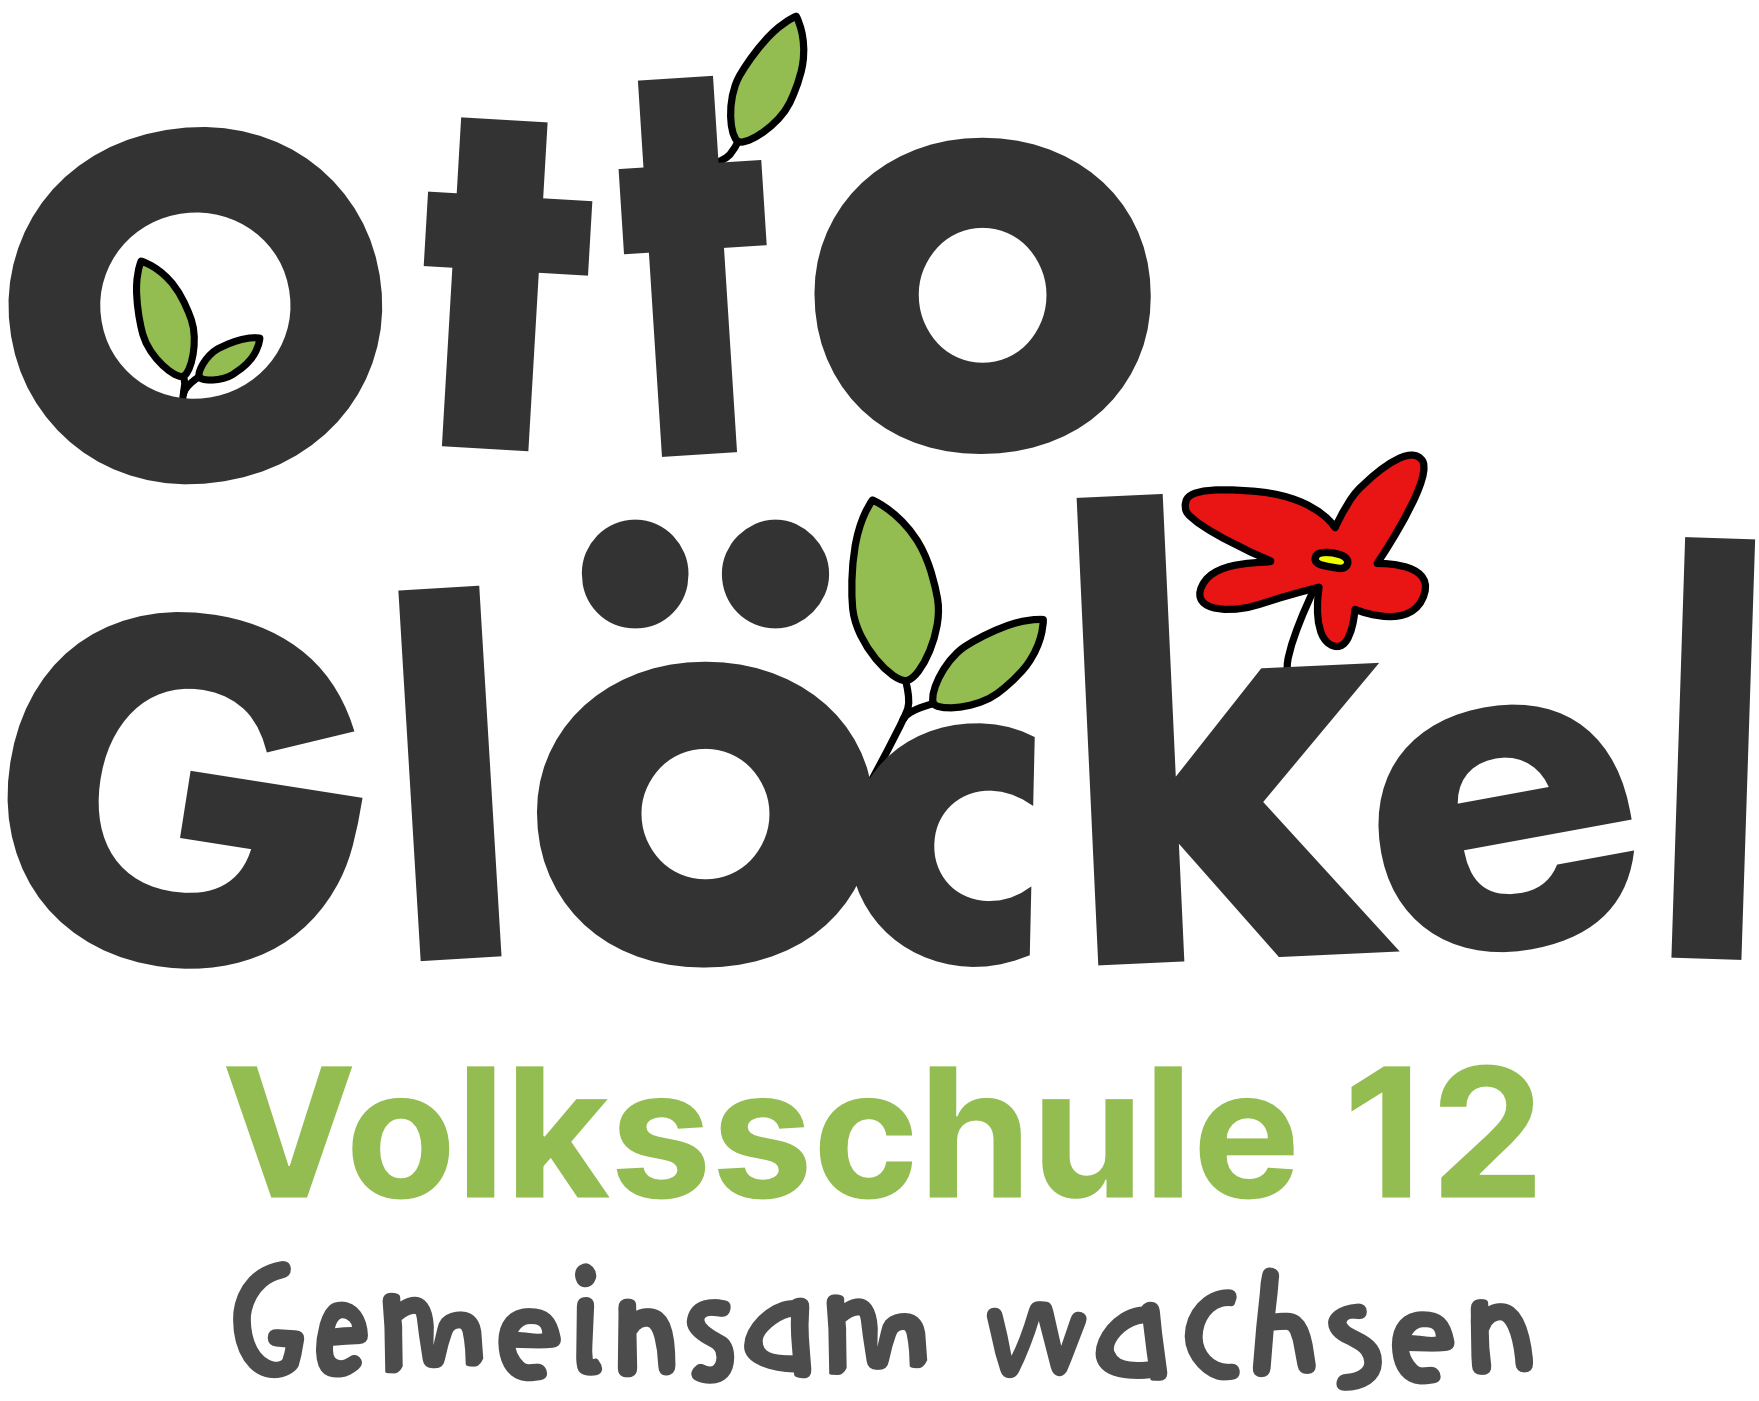 VS12 Otto-Glöckel